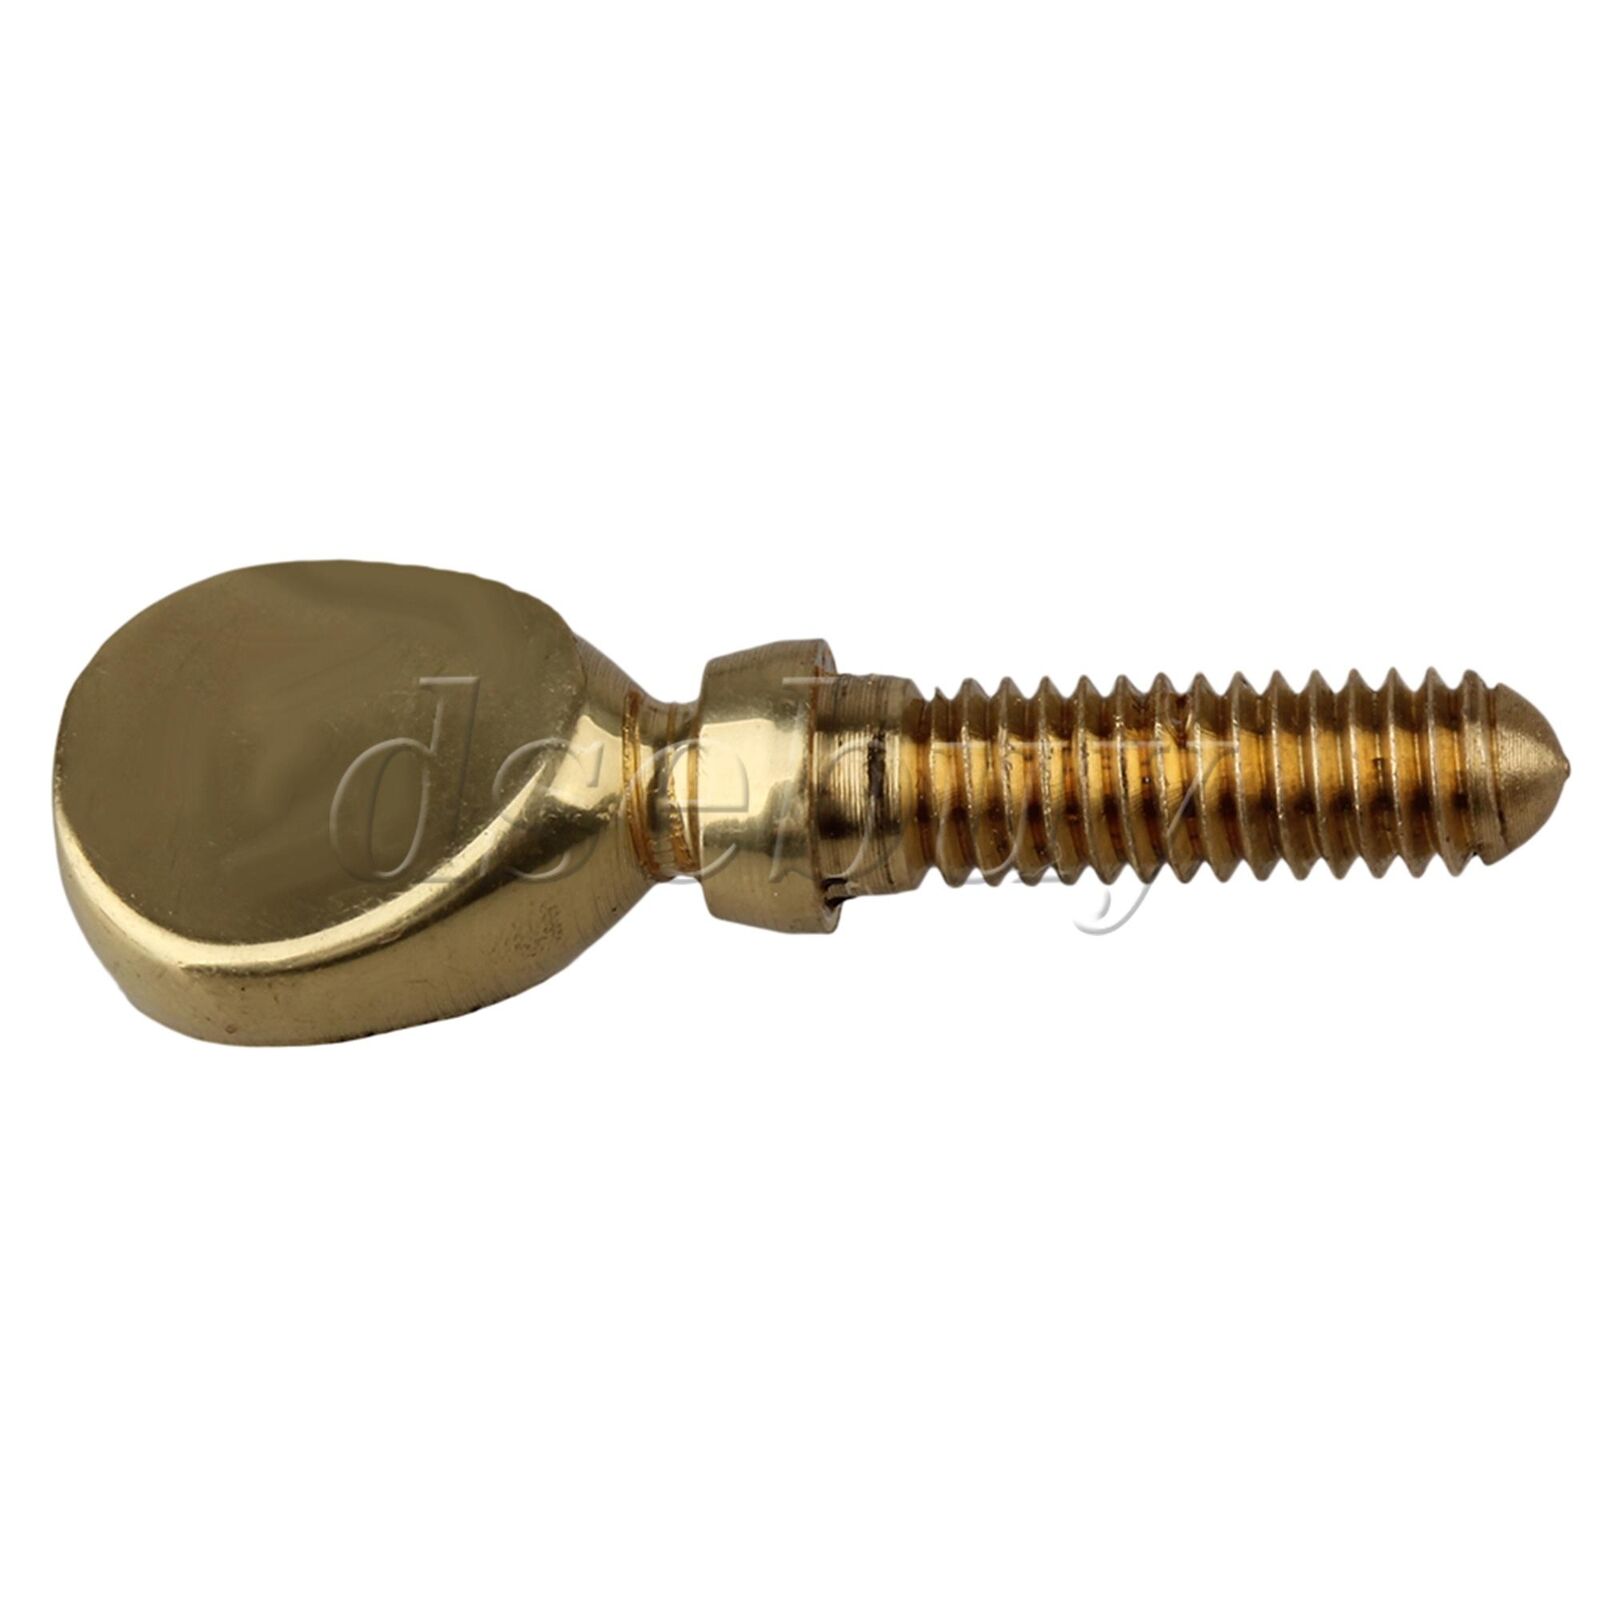 Golden Sax Neck Screw Tightening Attach Screw for Saxophone Neck Parts